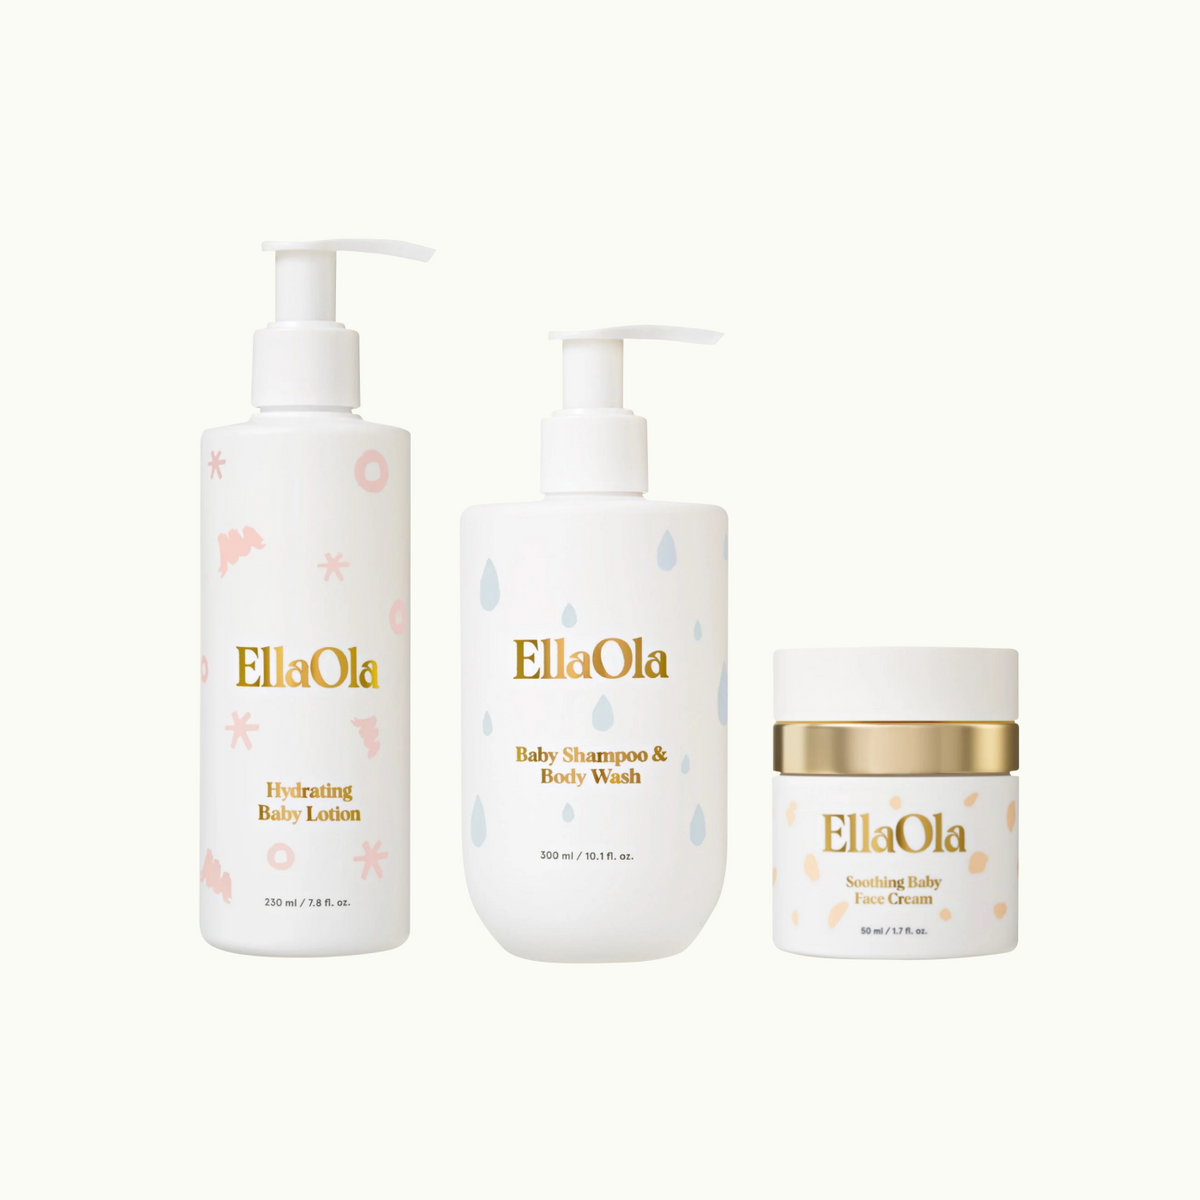 ellaola hydrating baby lotion, ellaola baby shampoo & body wash, ellaola soothing baby face cream